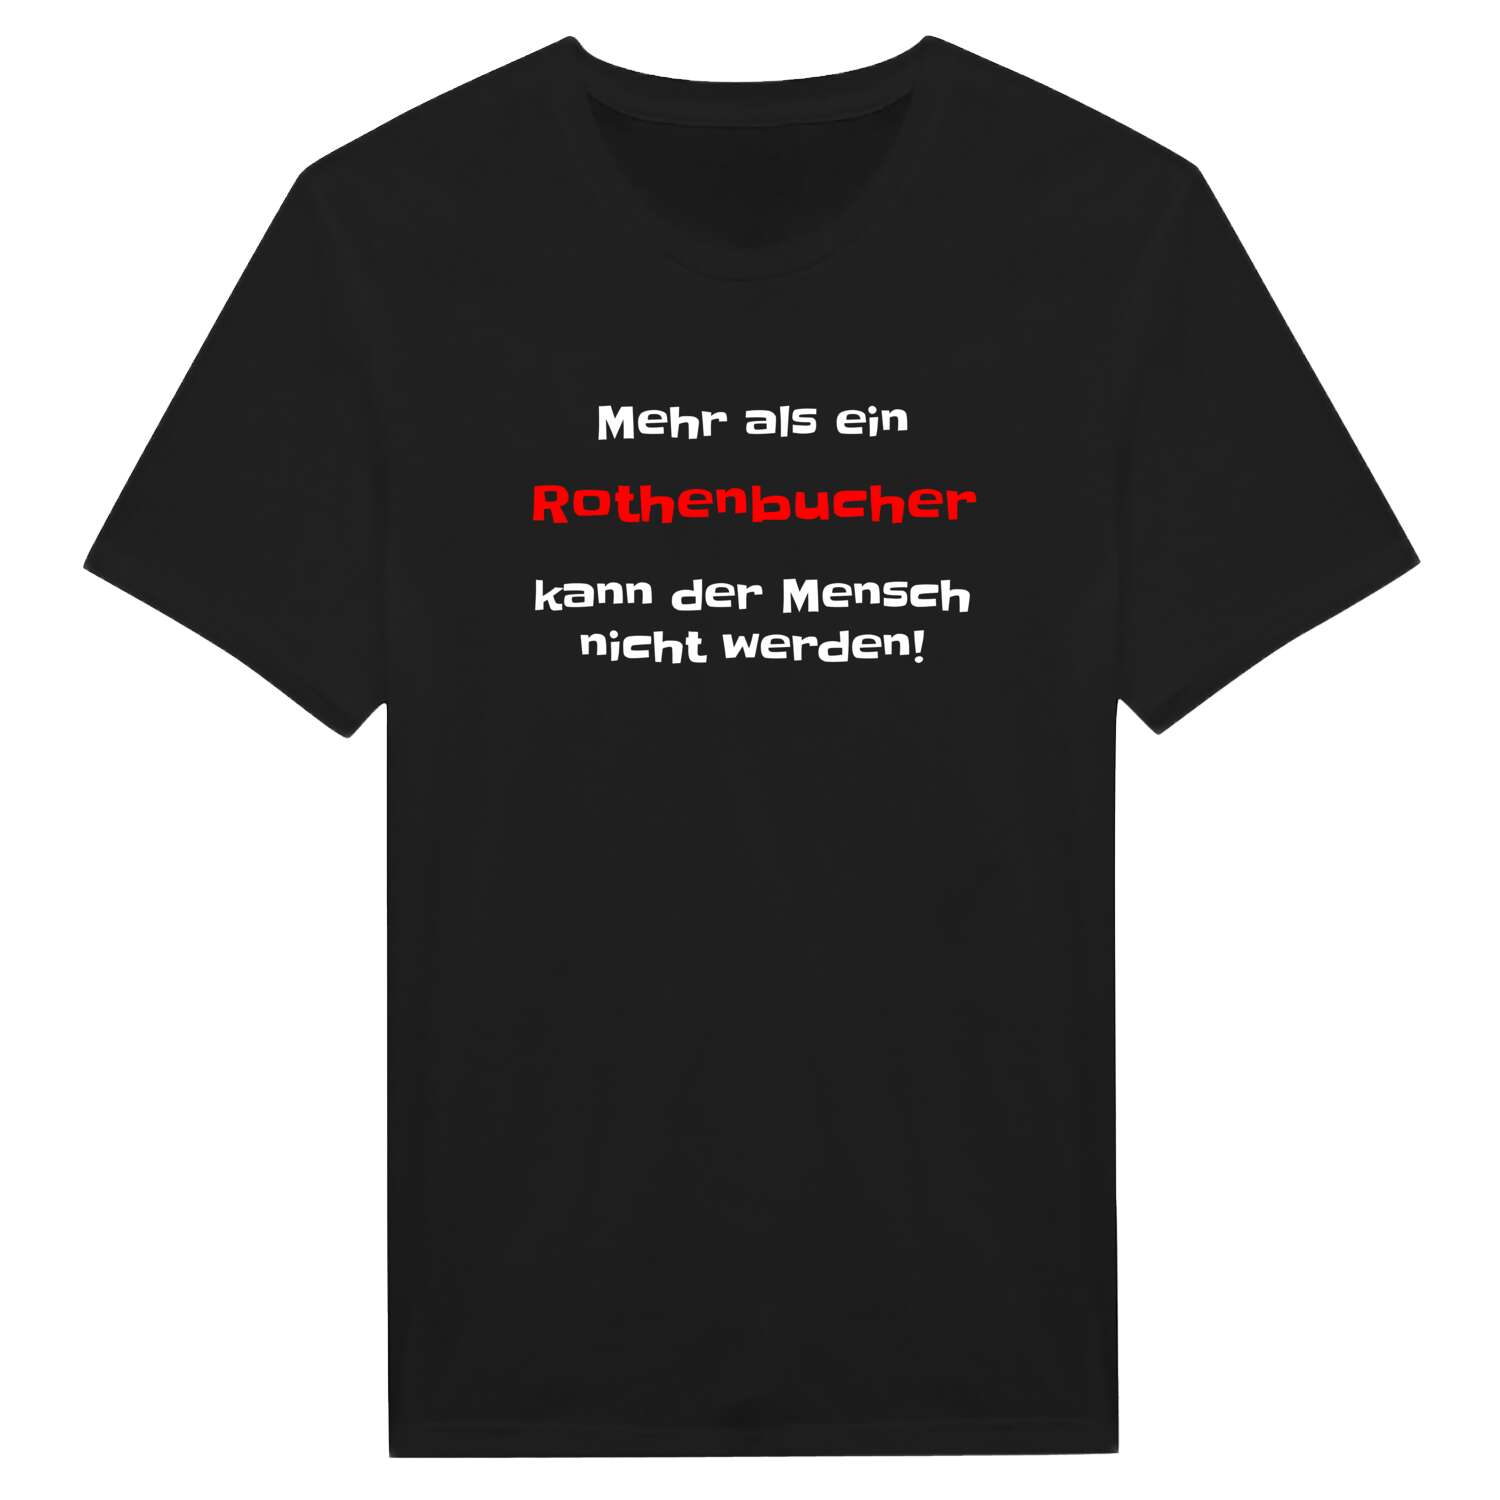 Rothenbuch T-Shirt »Mehr als ein«